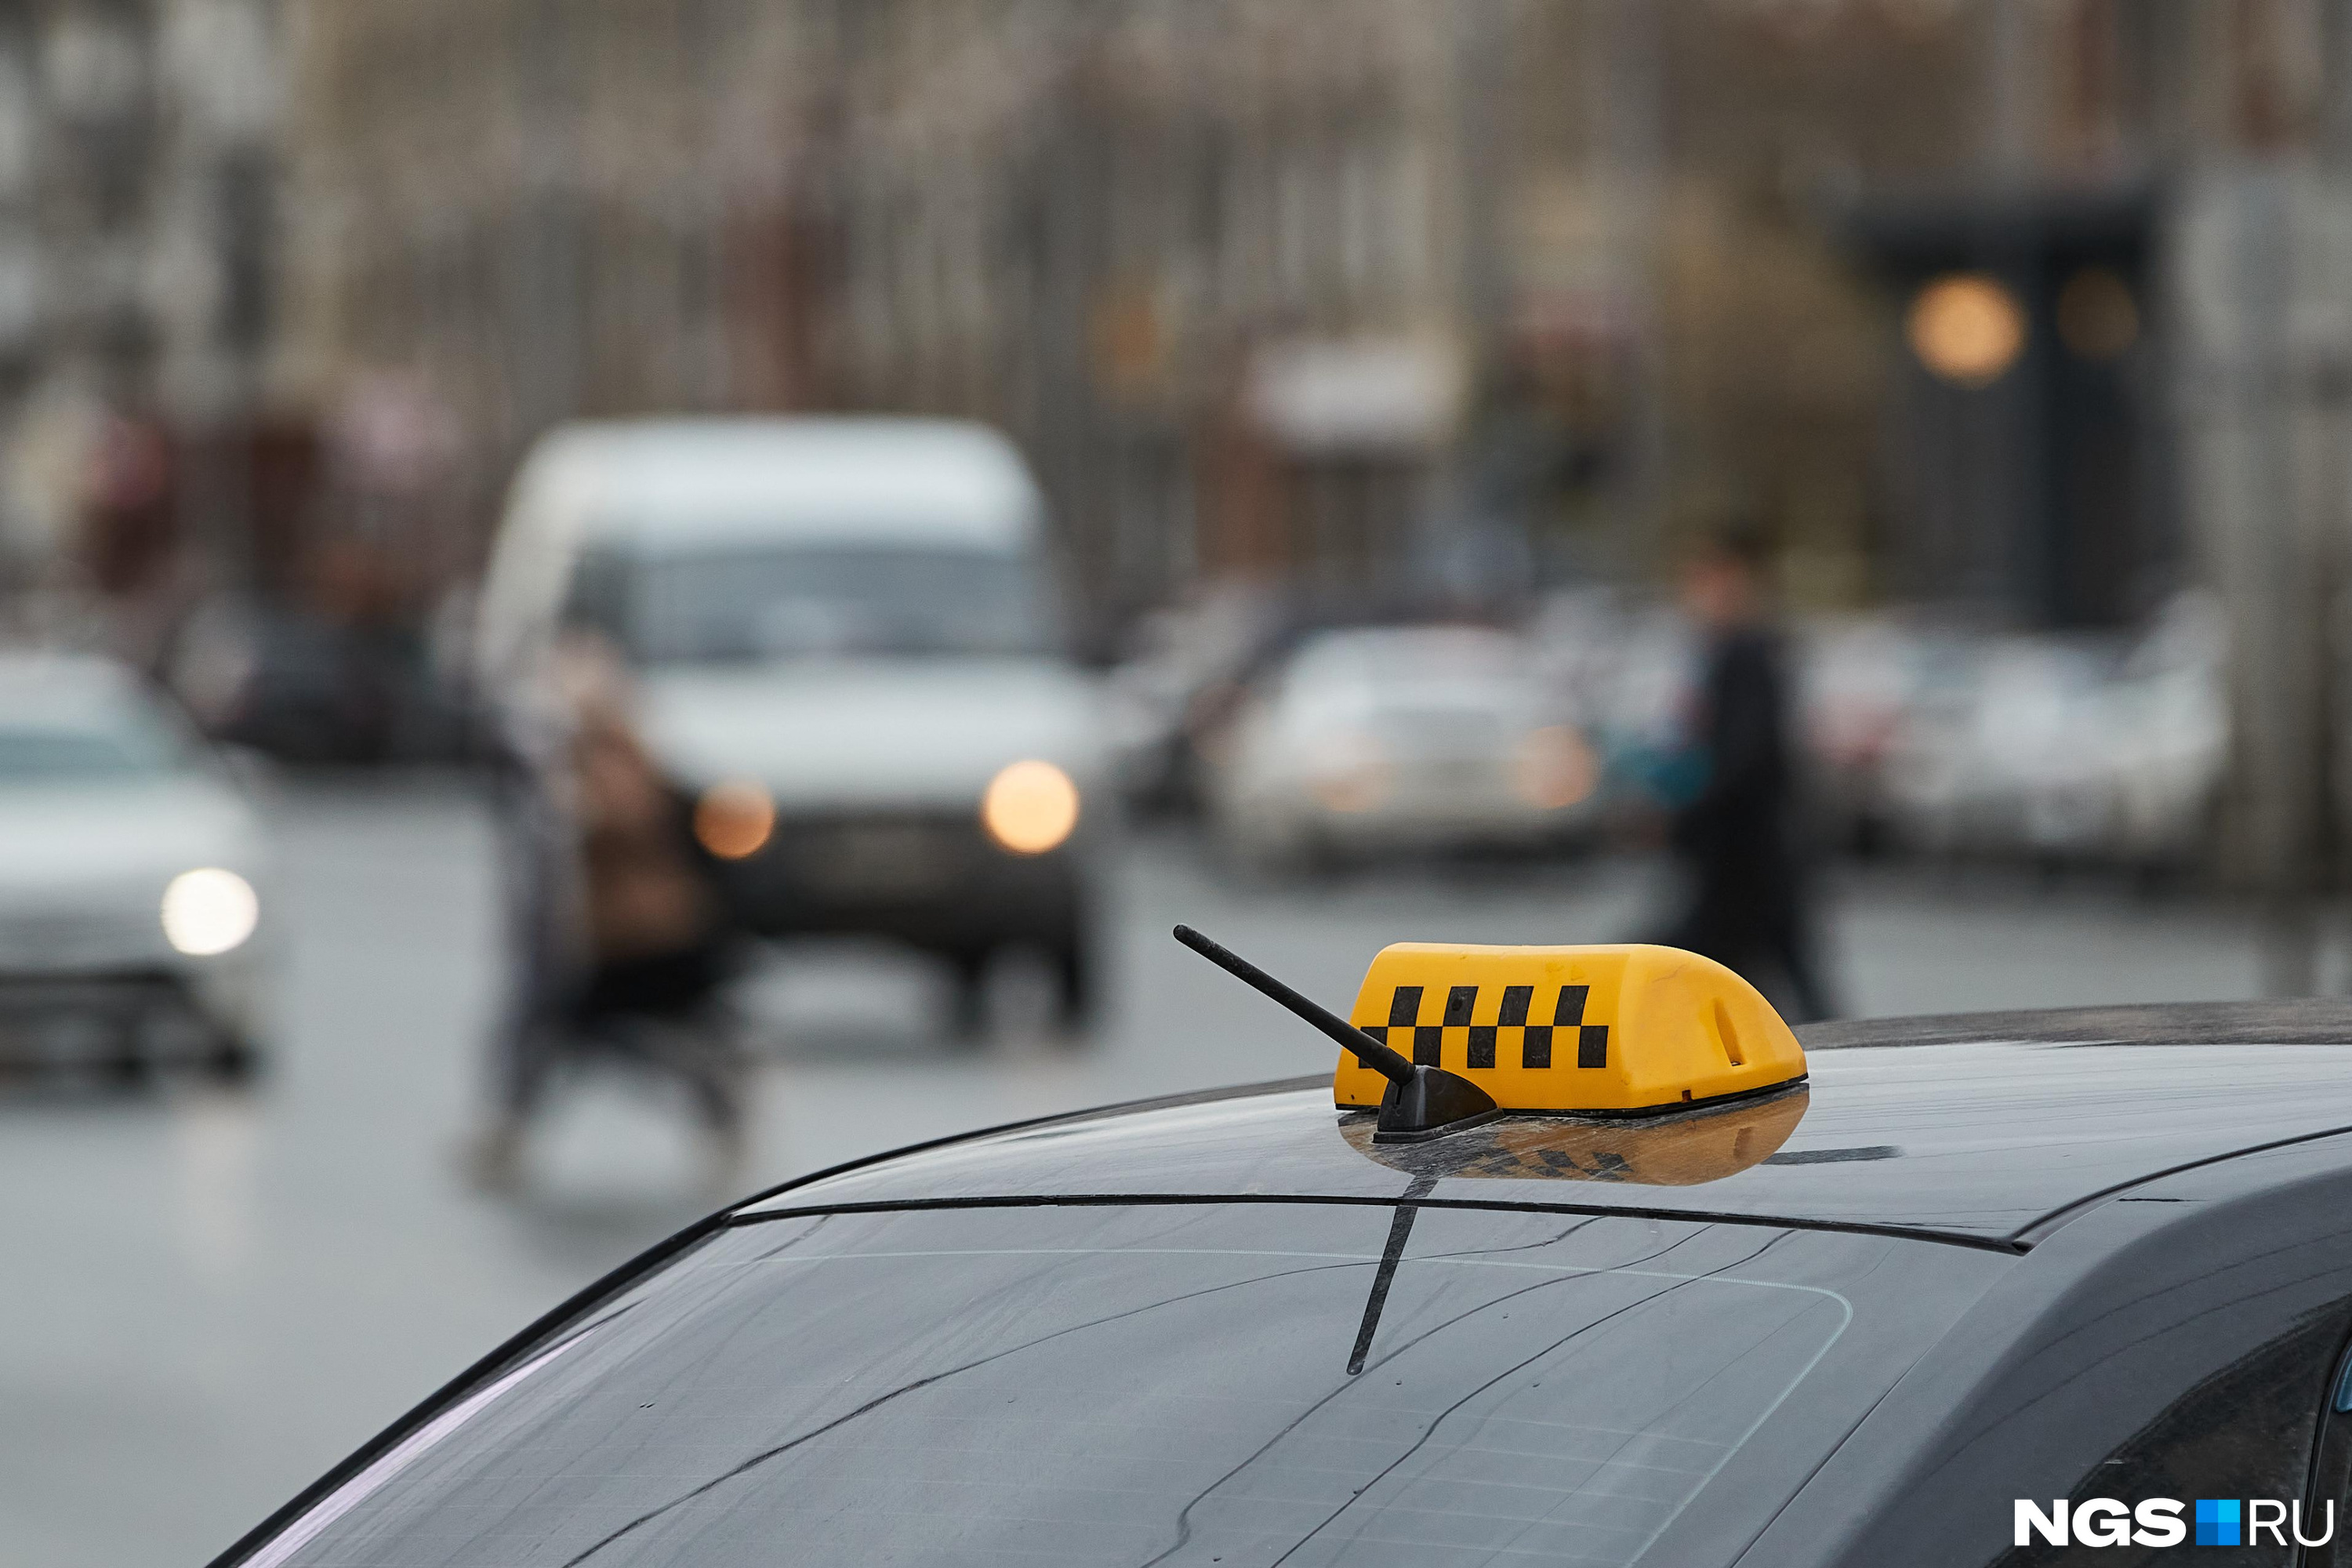 Полиция нашла таксиста «Максим», который похитил подарочный сертификат в Чите